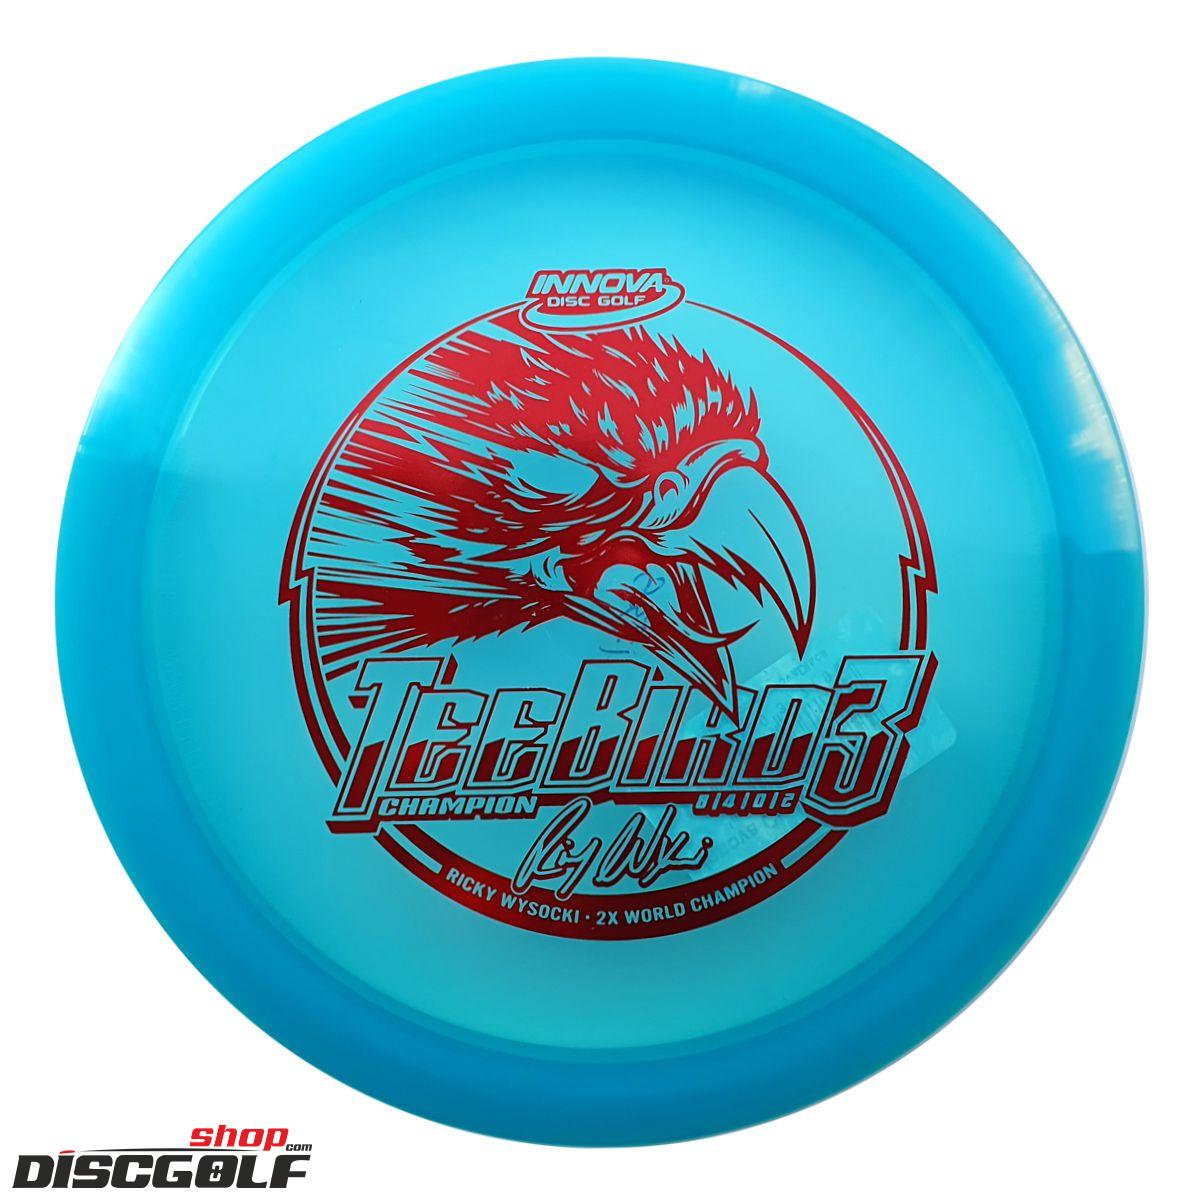 Innova Teebird3 Champion Ricky Wysocky Eagle print (discgolf)